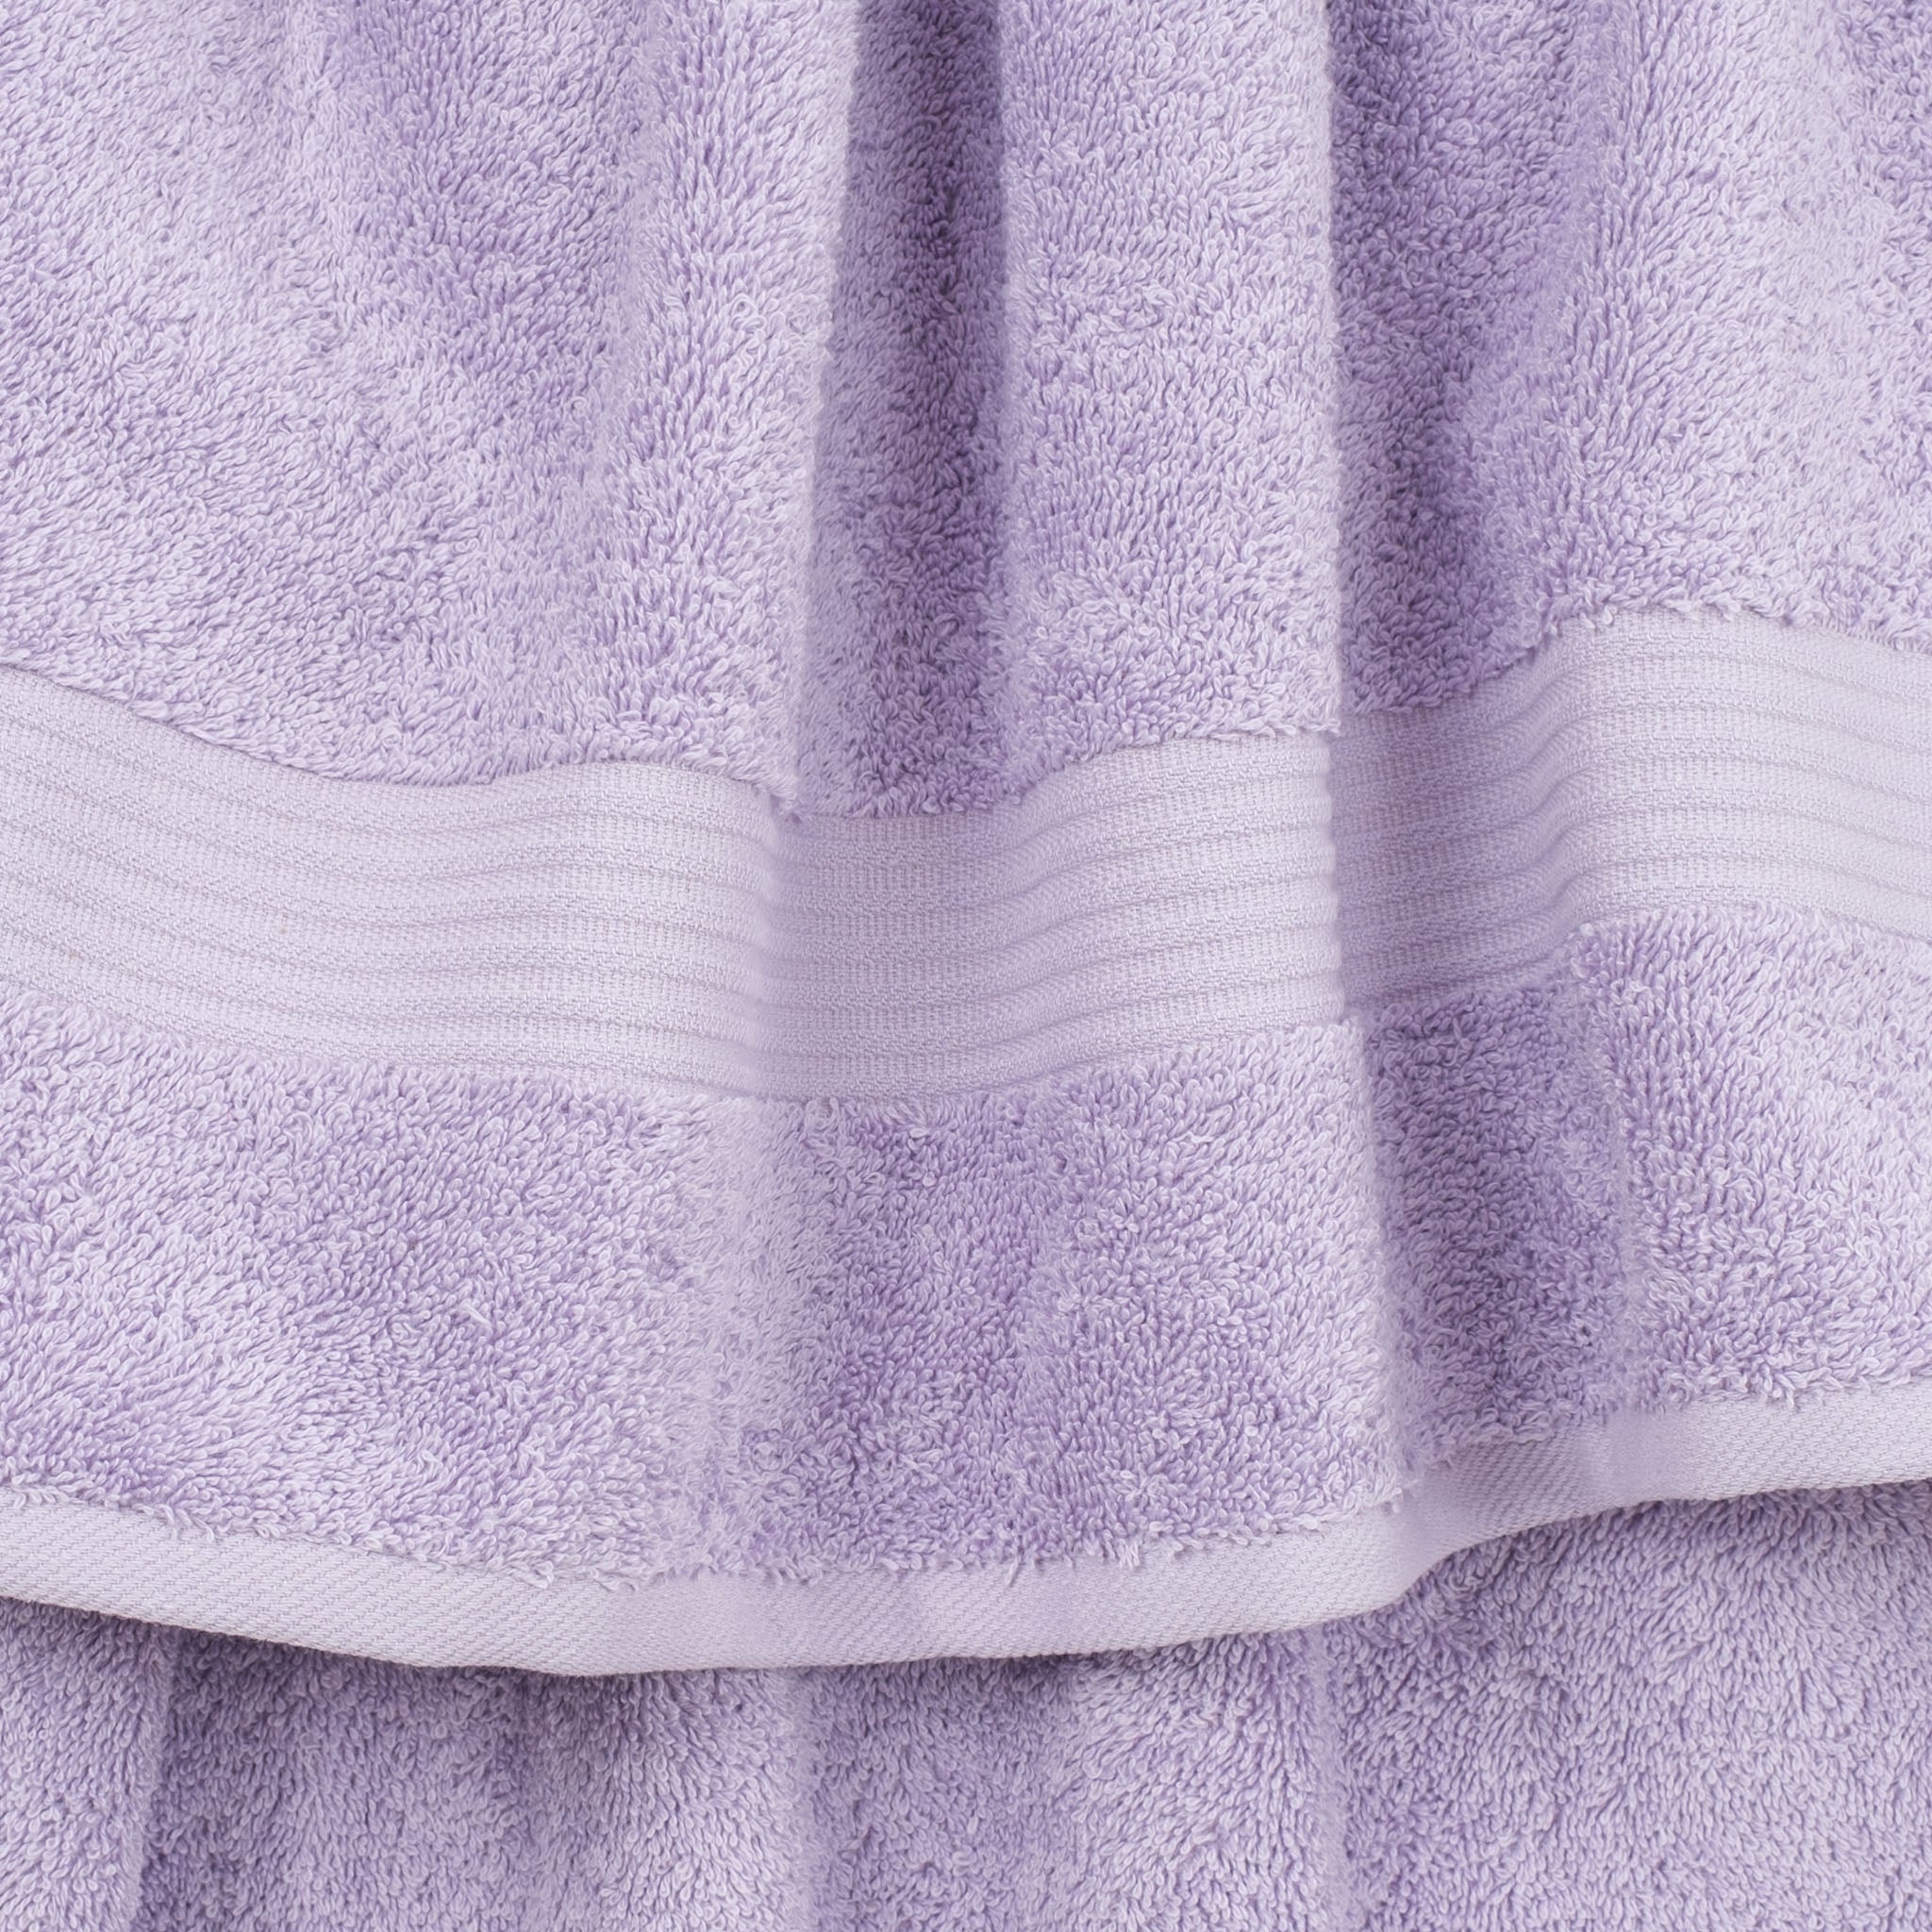 American Soft Linen Bekos 100% Cotton Turkish Towels, 4 Piece Bath Towel Set -lilac-03